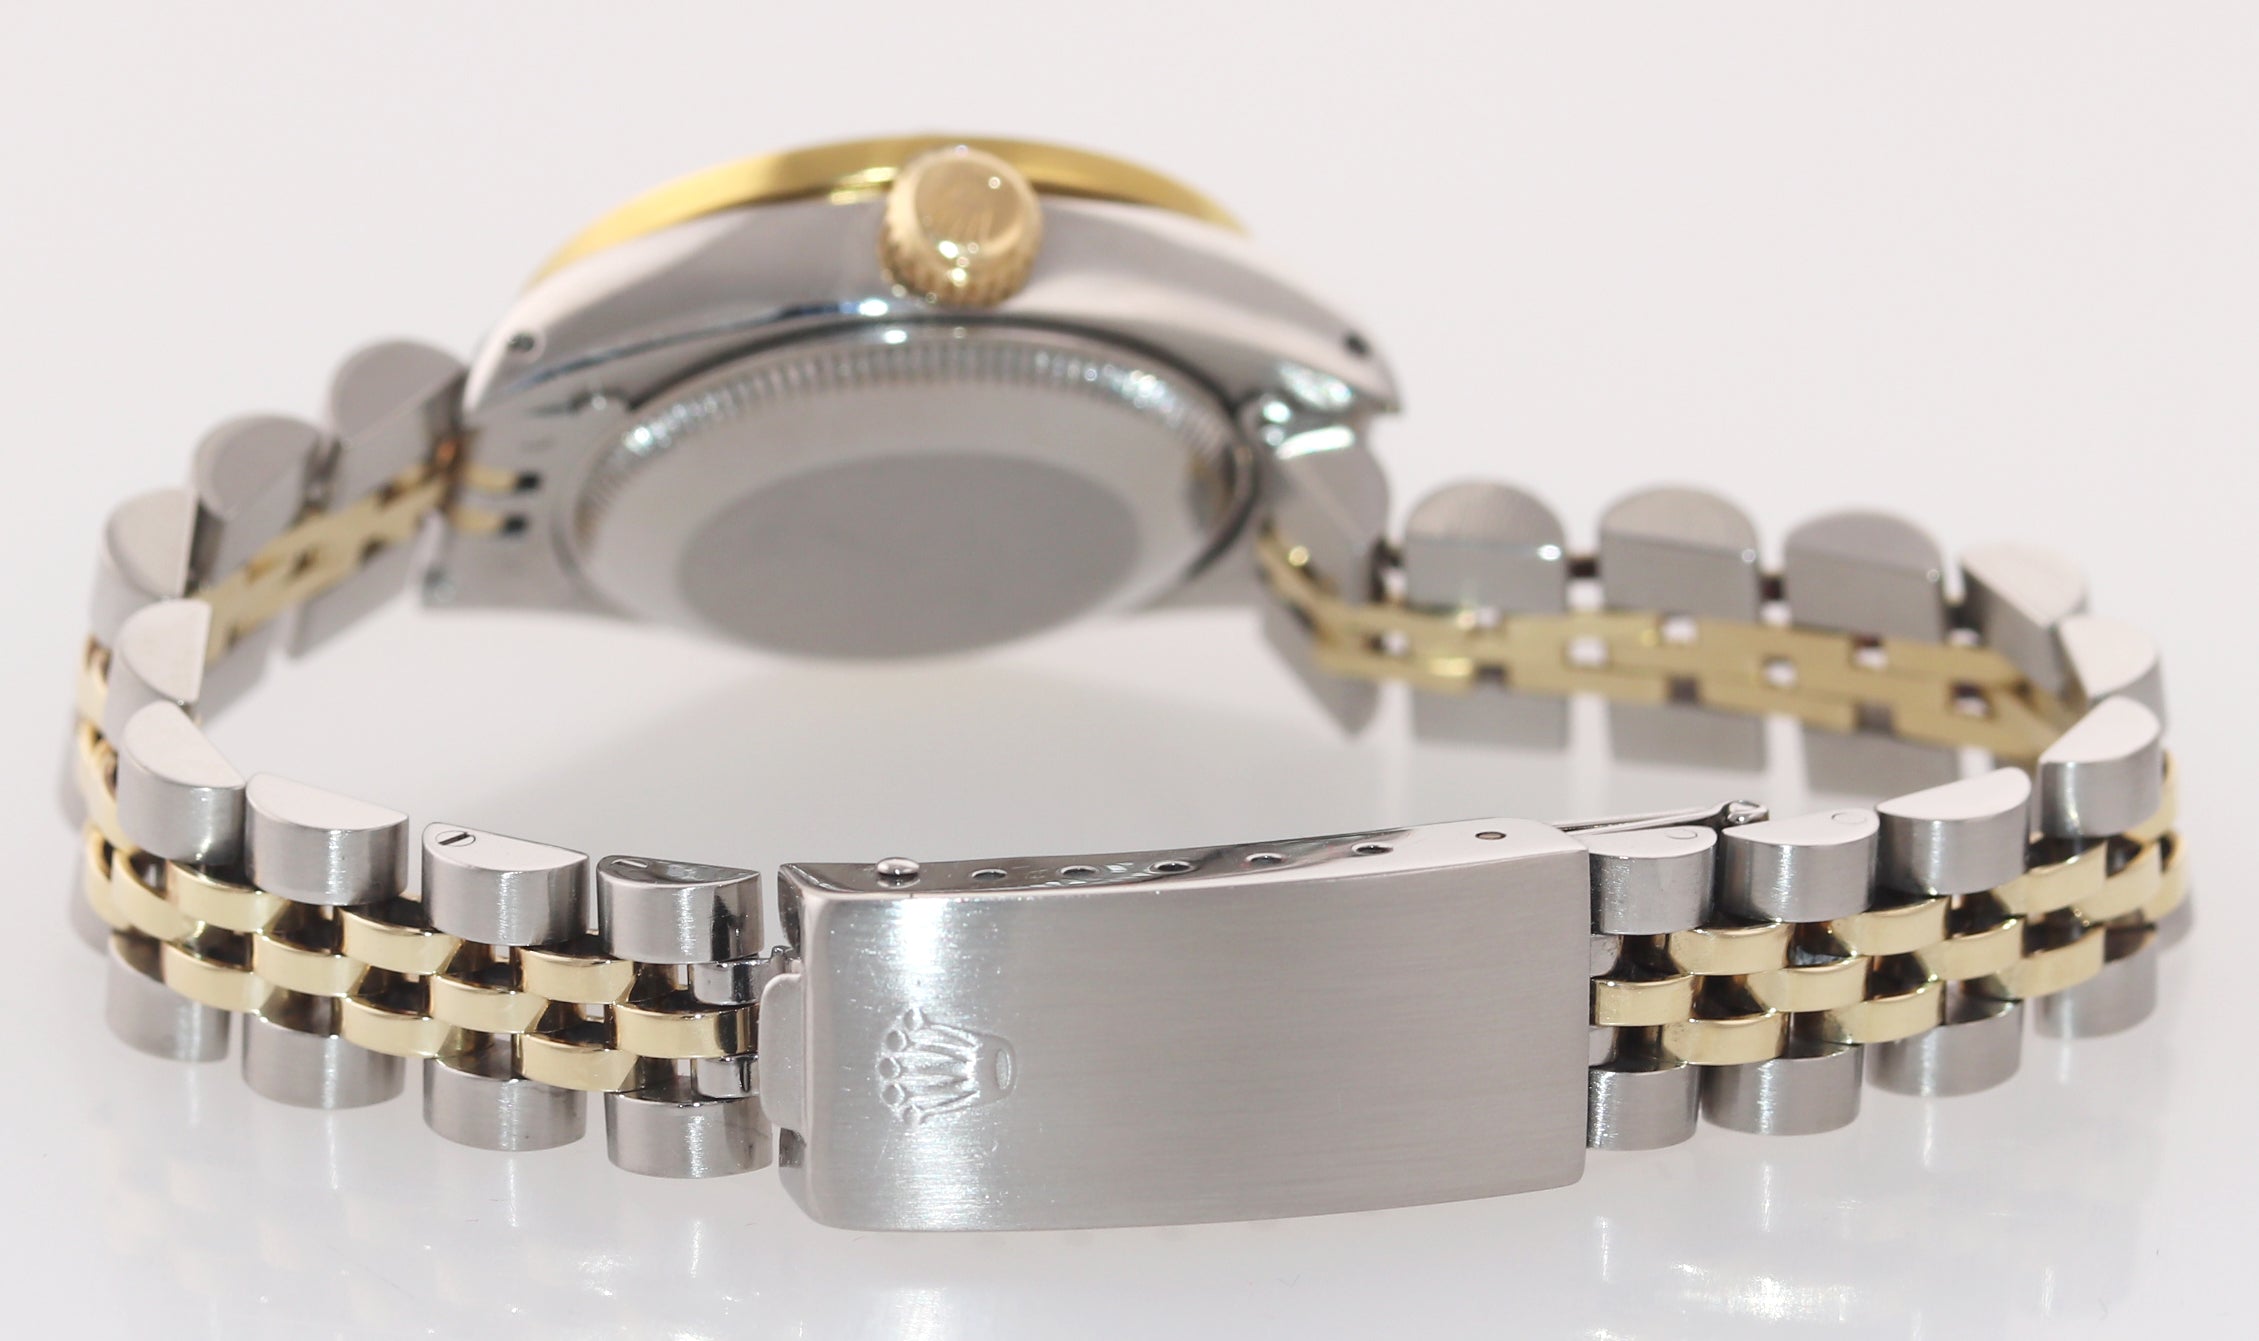 Rolex 6917 Two Tone 18k Gold 26mm mother of pearl diamond Bezel Jubilee Watch Bo